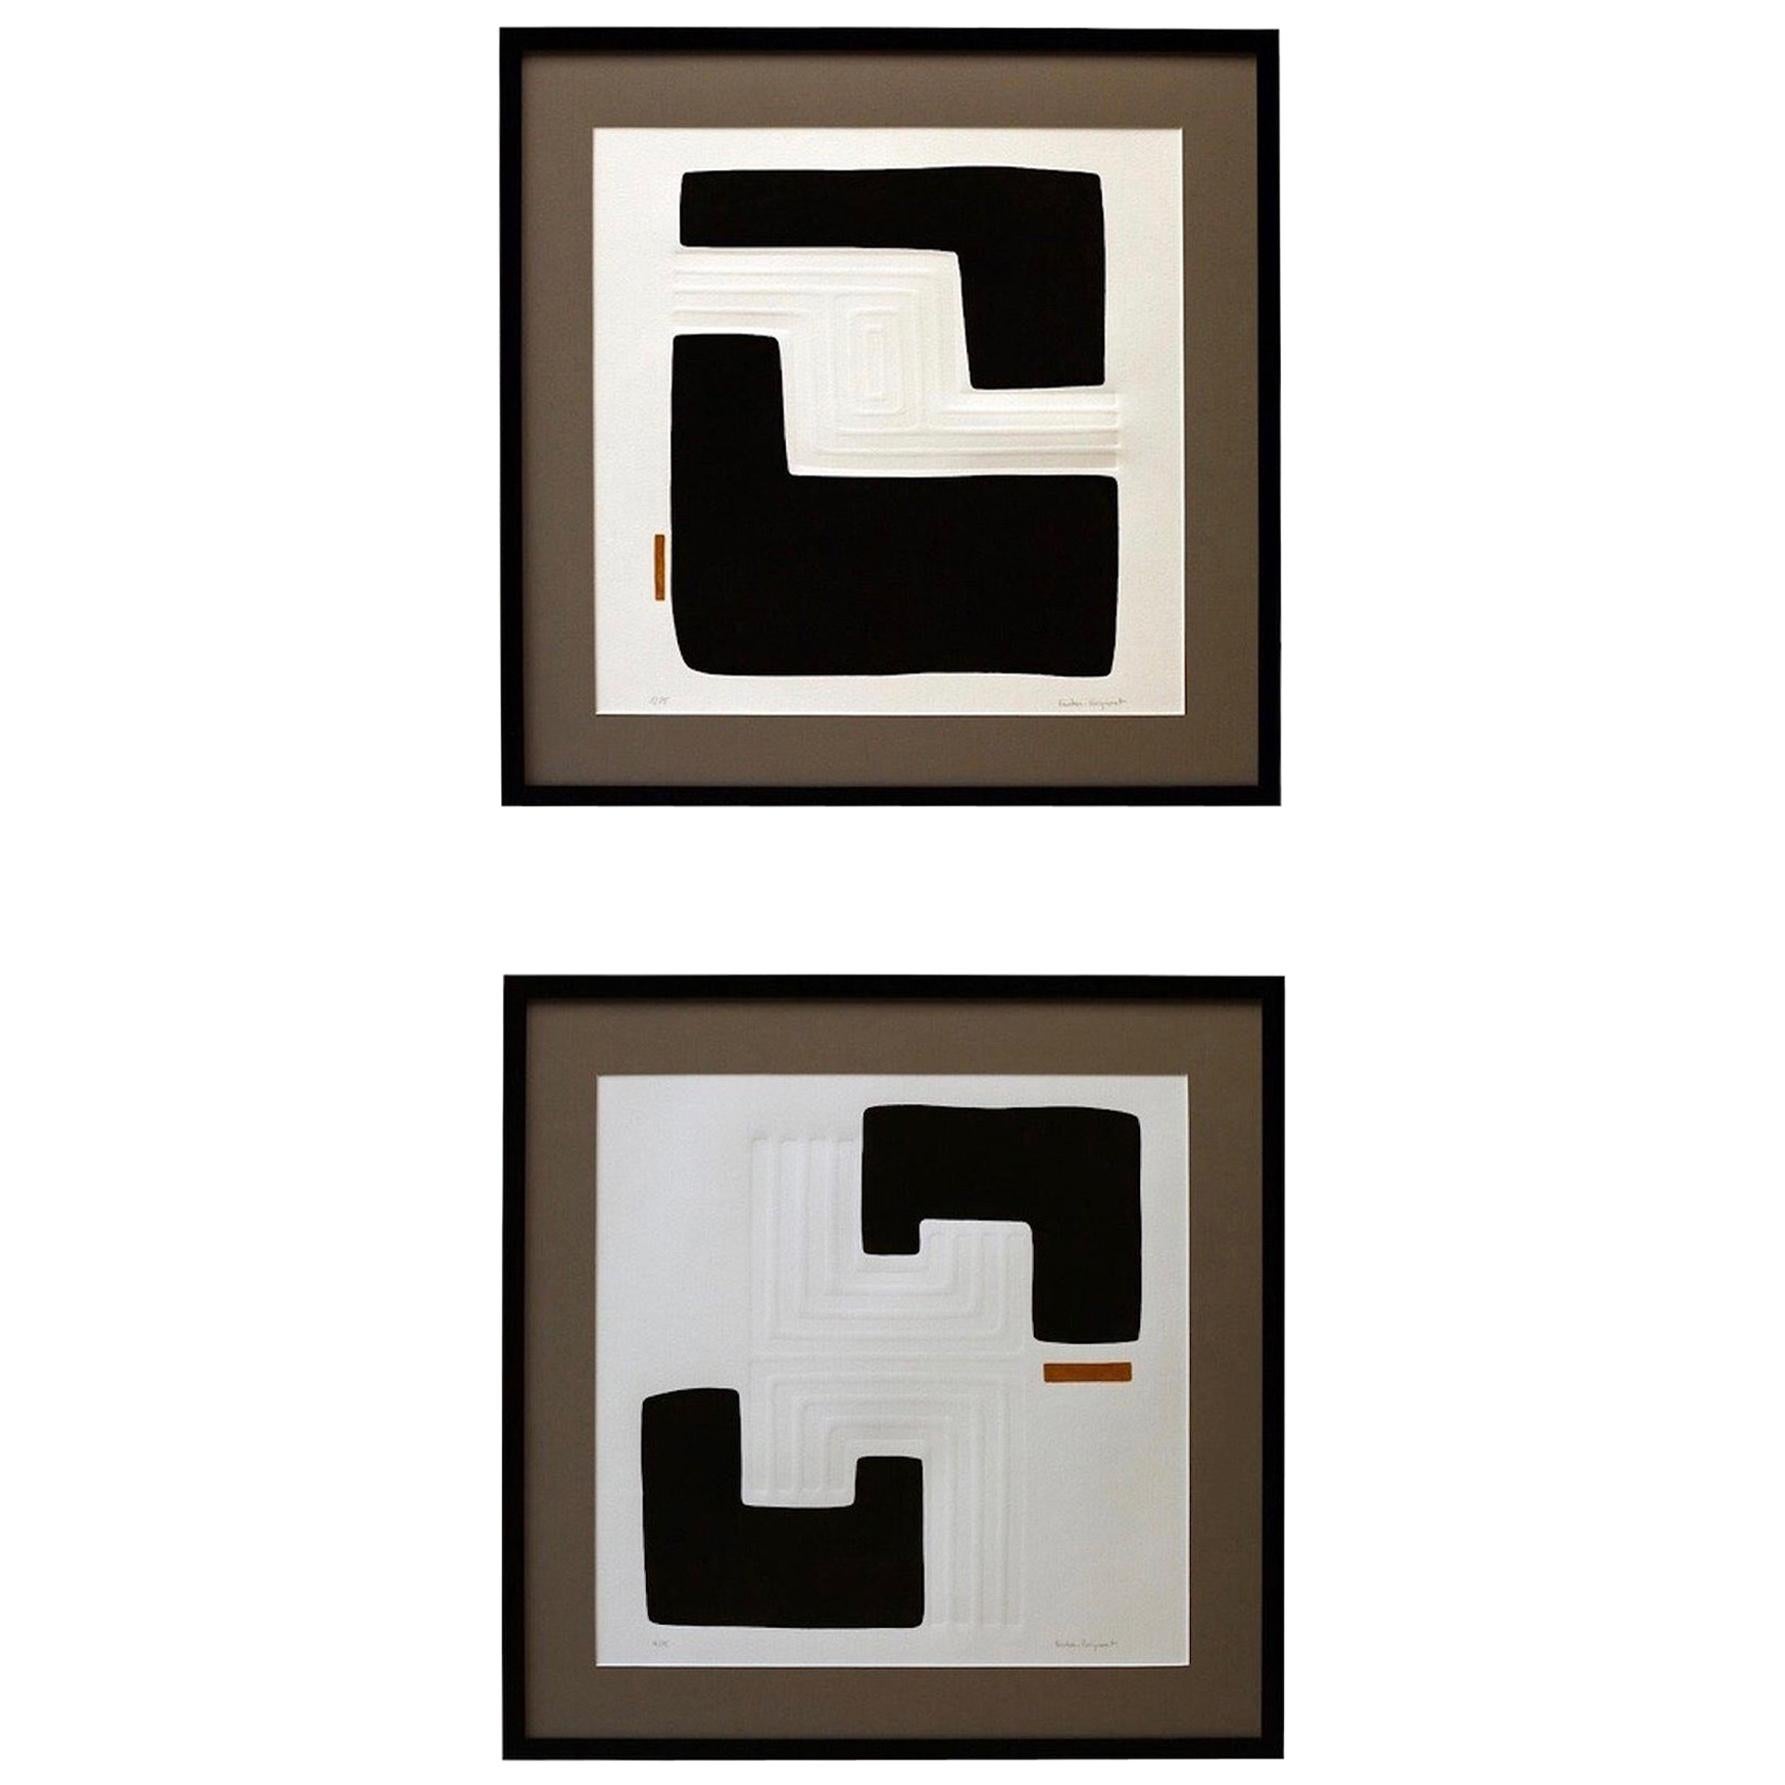 Schwarz-Weiß-Gravuren mit Goldakzenten des zeitgenössischen französischen Künstlers Foucher Poignant
Erhabene geometrische Muster erstellt 
Zwei einzigartige Designs verfügbar, die schön zusammenhängen.
Einzeln verkauft.
     